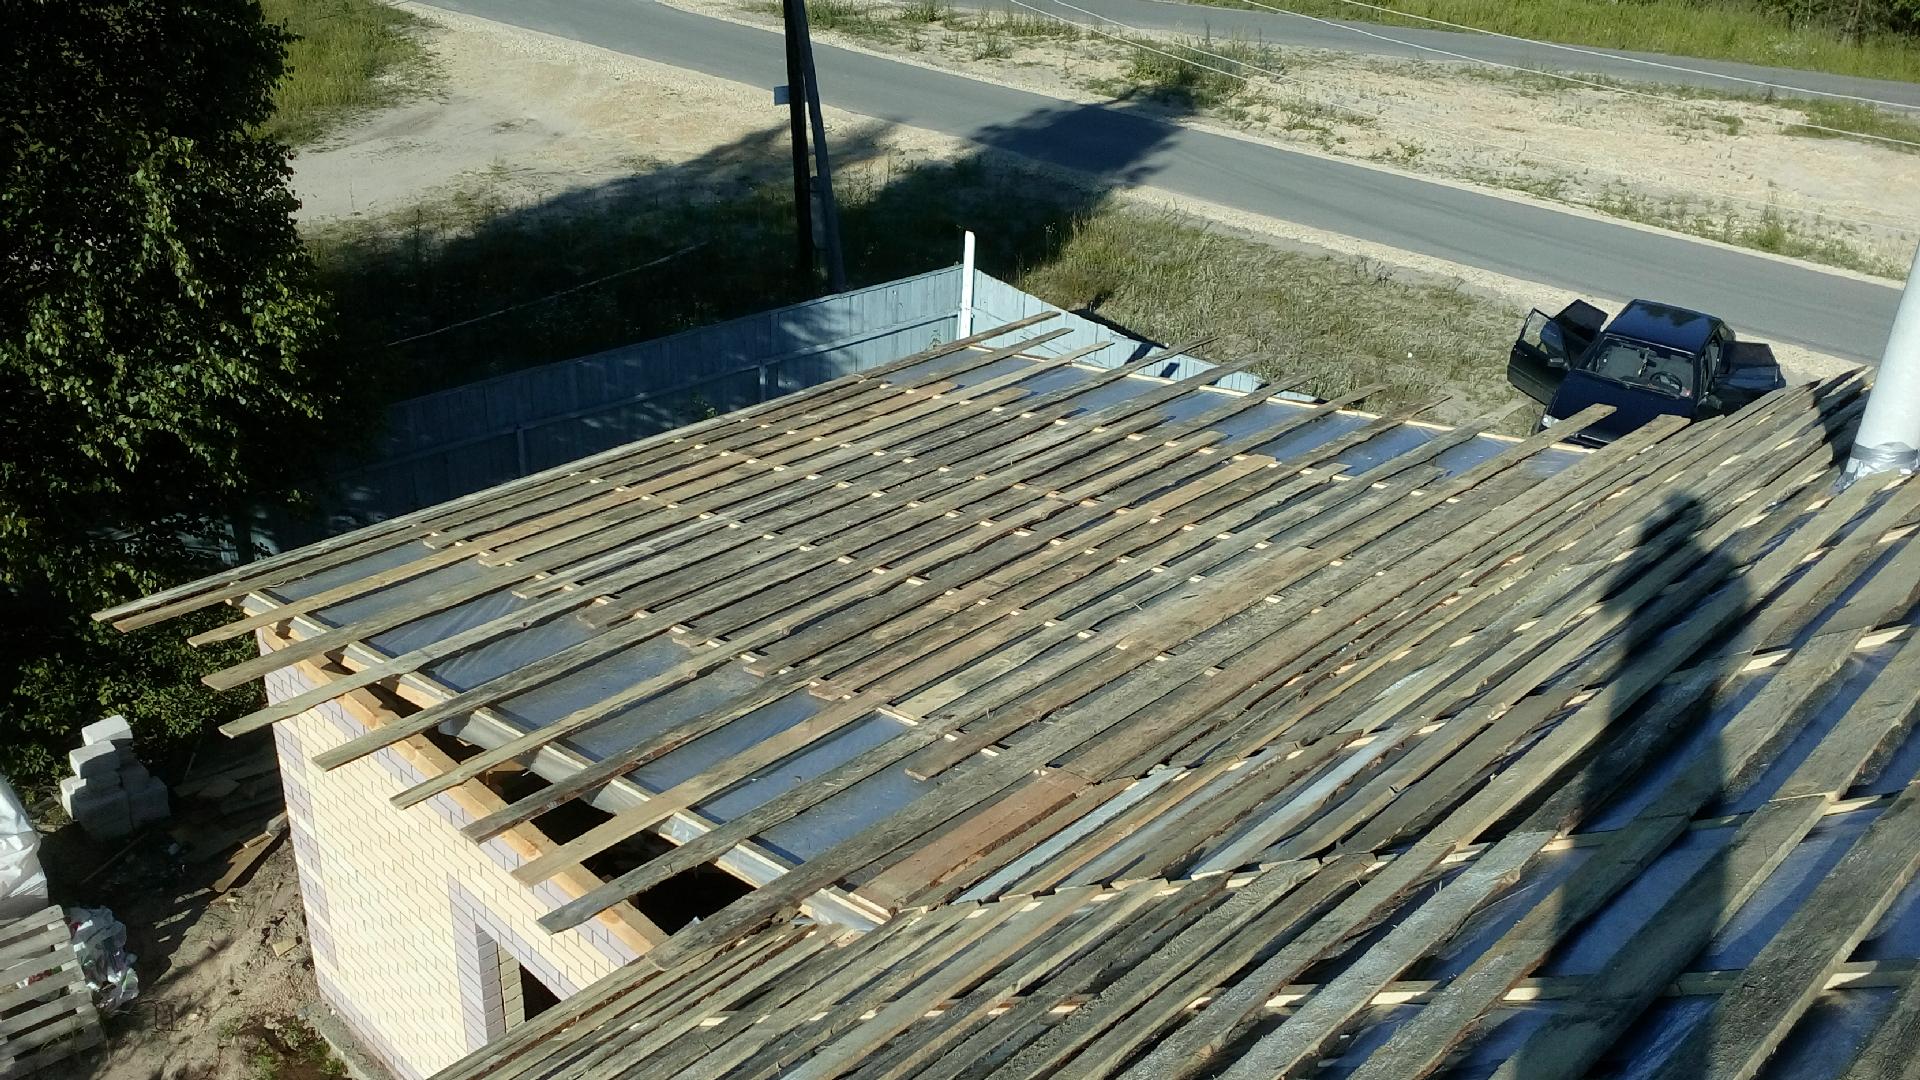 Самостоятельное покрытие крыши гаража профнастилом: порядок работ